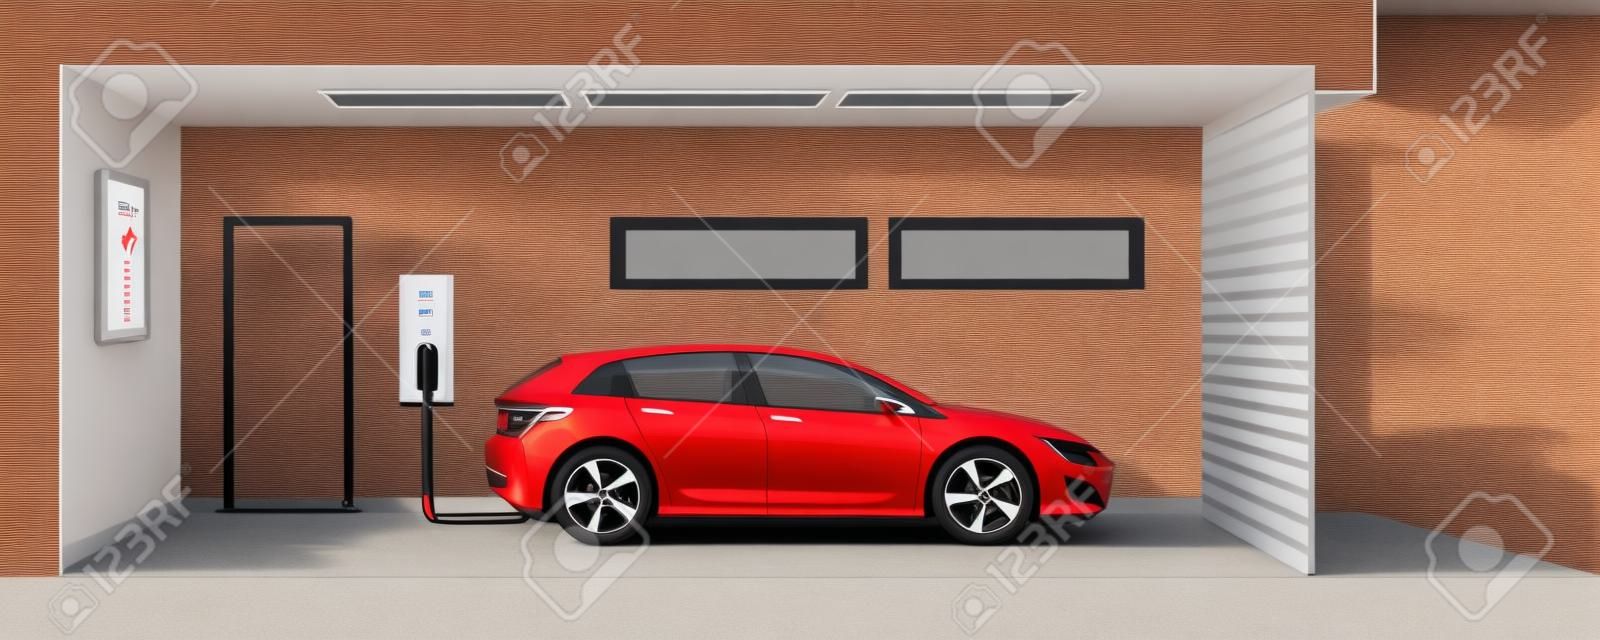 Ilustração plana de um carro elétrico vermelho que carrega no ponto da estação do carregador dentro da garagem da casa. Conceito e-motion doméstico inteligente integrado da eletromobilidade.